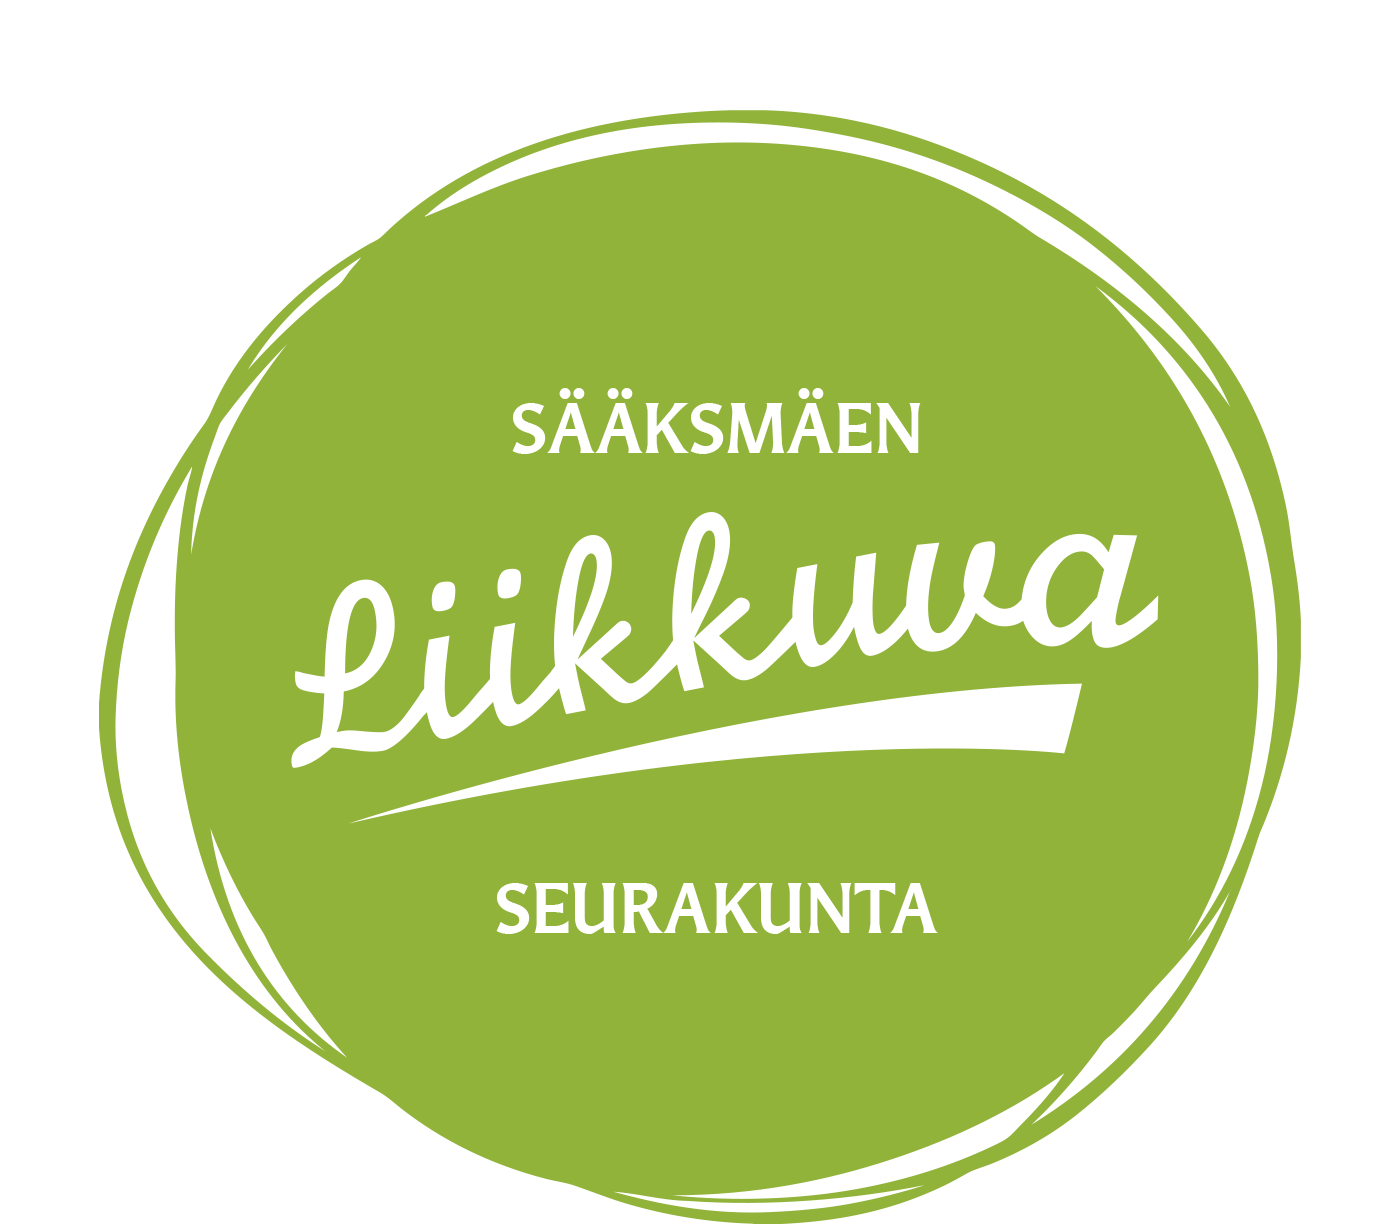 liikkuva seurakunta vihreä logo